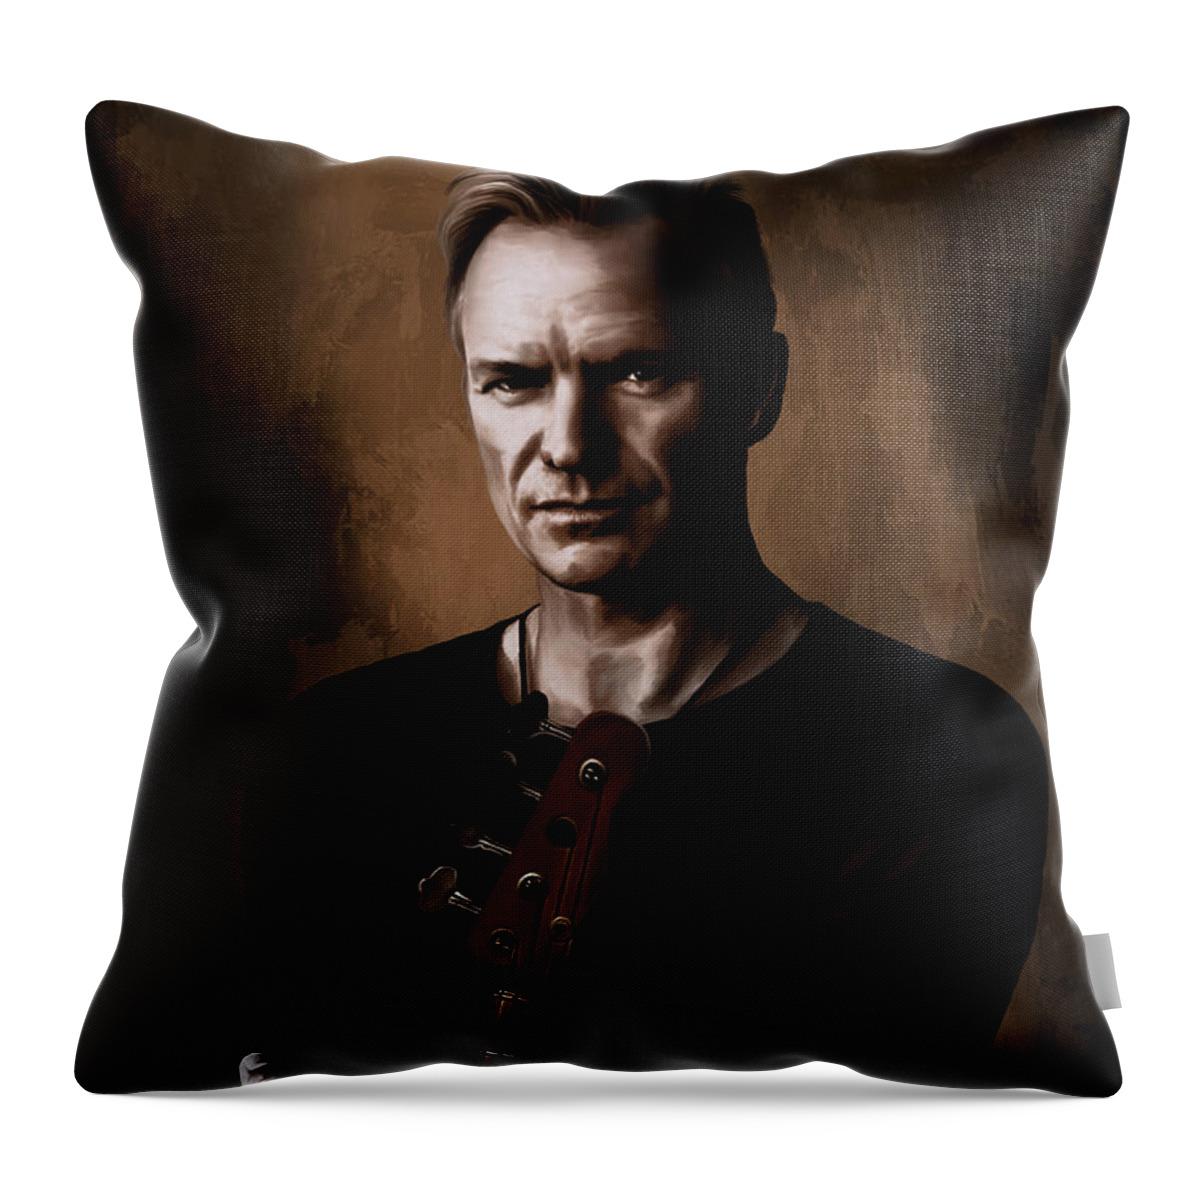 Sting Throw Pillow featuring the digital art Sting by Andrzej Szczerski